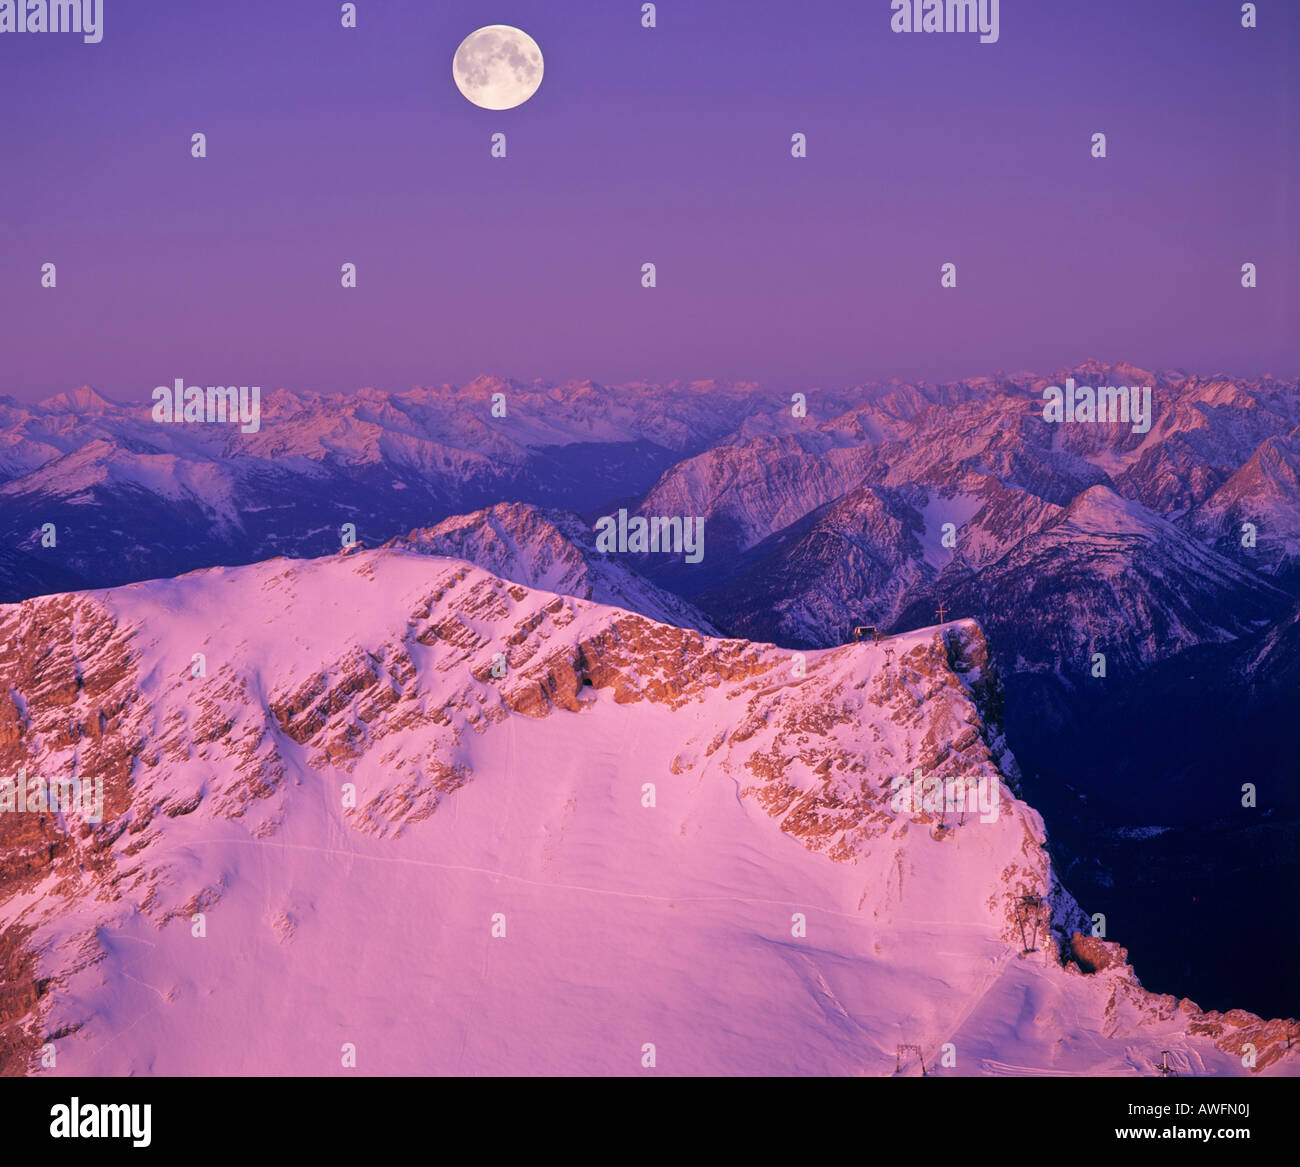 Vue panoramique à partir de Mt. Vers la Zugspitze Alpes de Lechtal et Alpes Oetztal, pleine lune, Upper Bavaria, Bavaria, Germany, Europe Banque D'Images